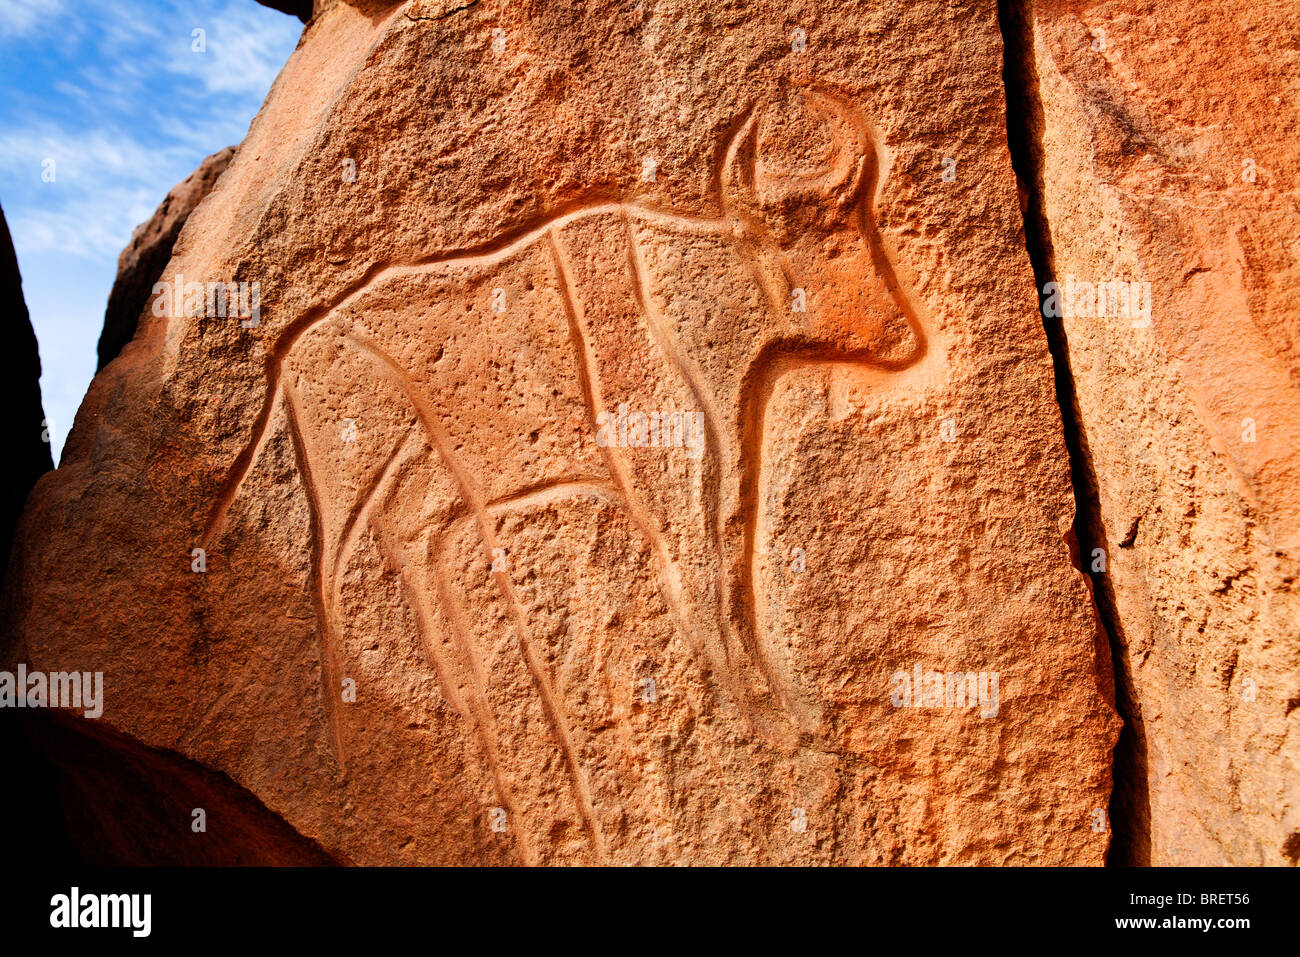 Ancient engraving of a buffalo at the Wadi Matkhandouch, Libya Stock Photo